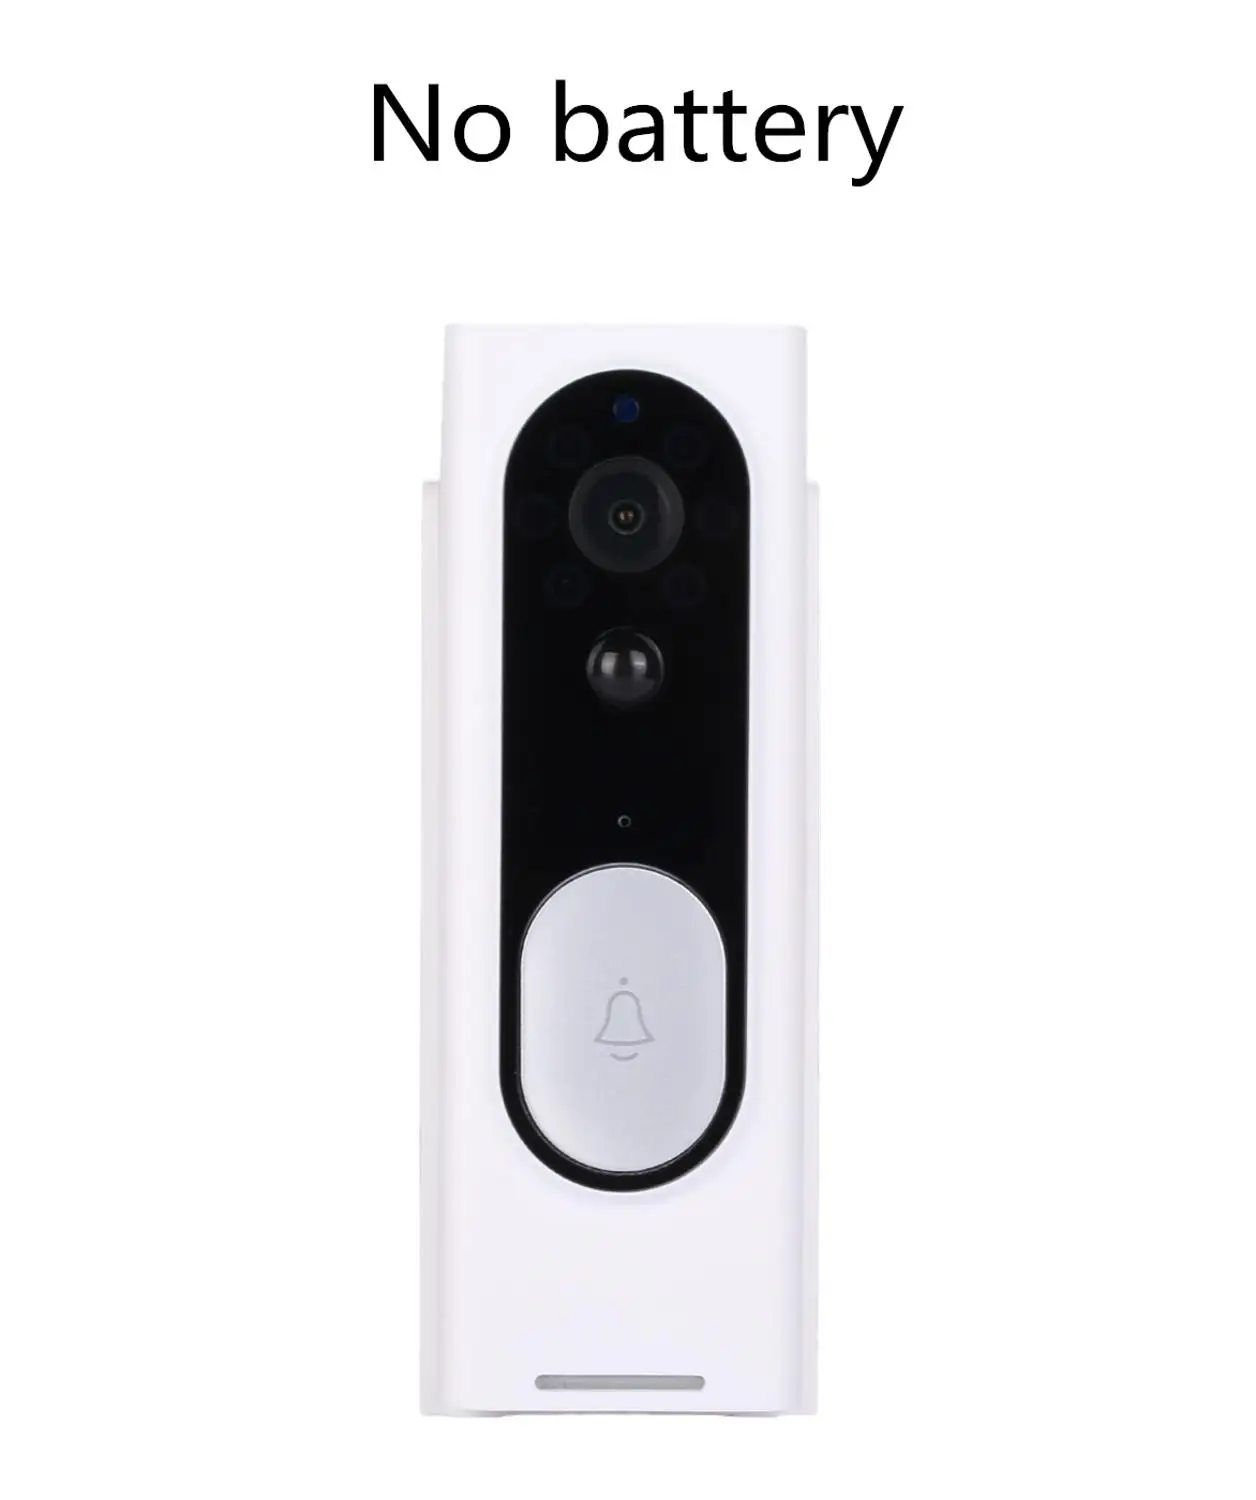 Vikewe видео дверной звонок 1080p HD ночного видения беспроводной WiFi безопасности домашний монитор домофон умный телефон Видимый дверной Звонок камера - Название цвета: Standard